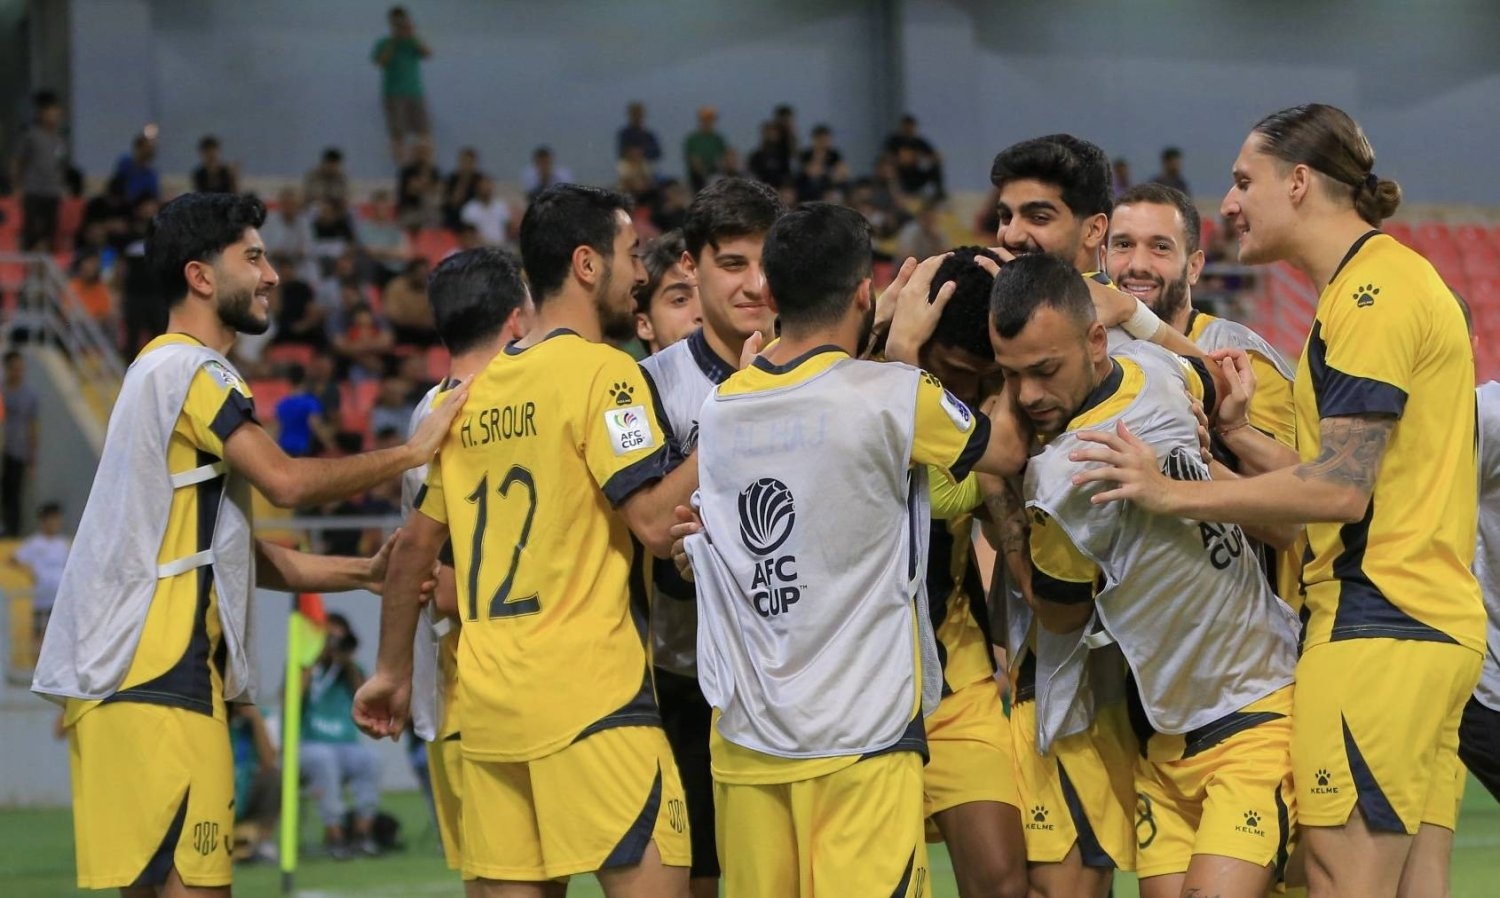 «كأس الاتحاد الآسيوي»: العهد اللبناني يضع قدماً في النهائي